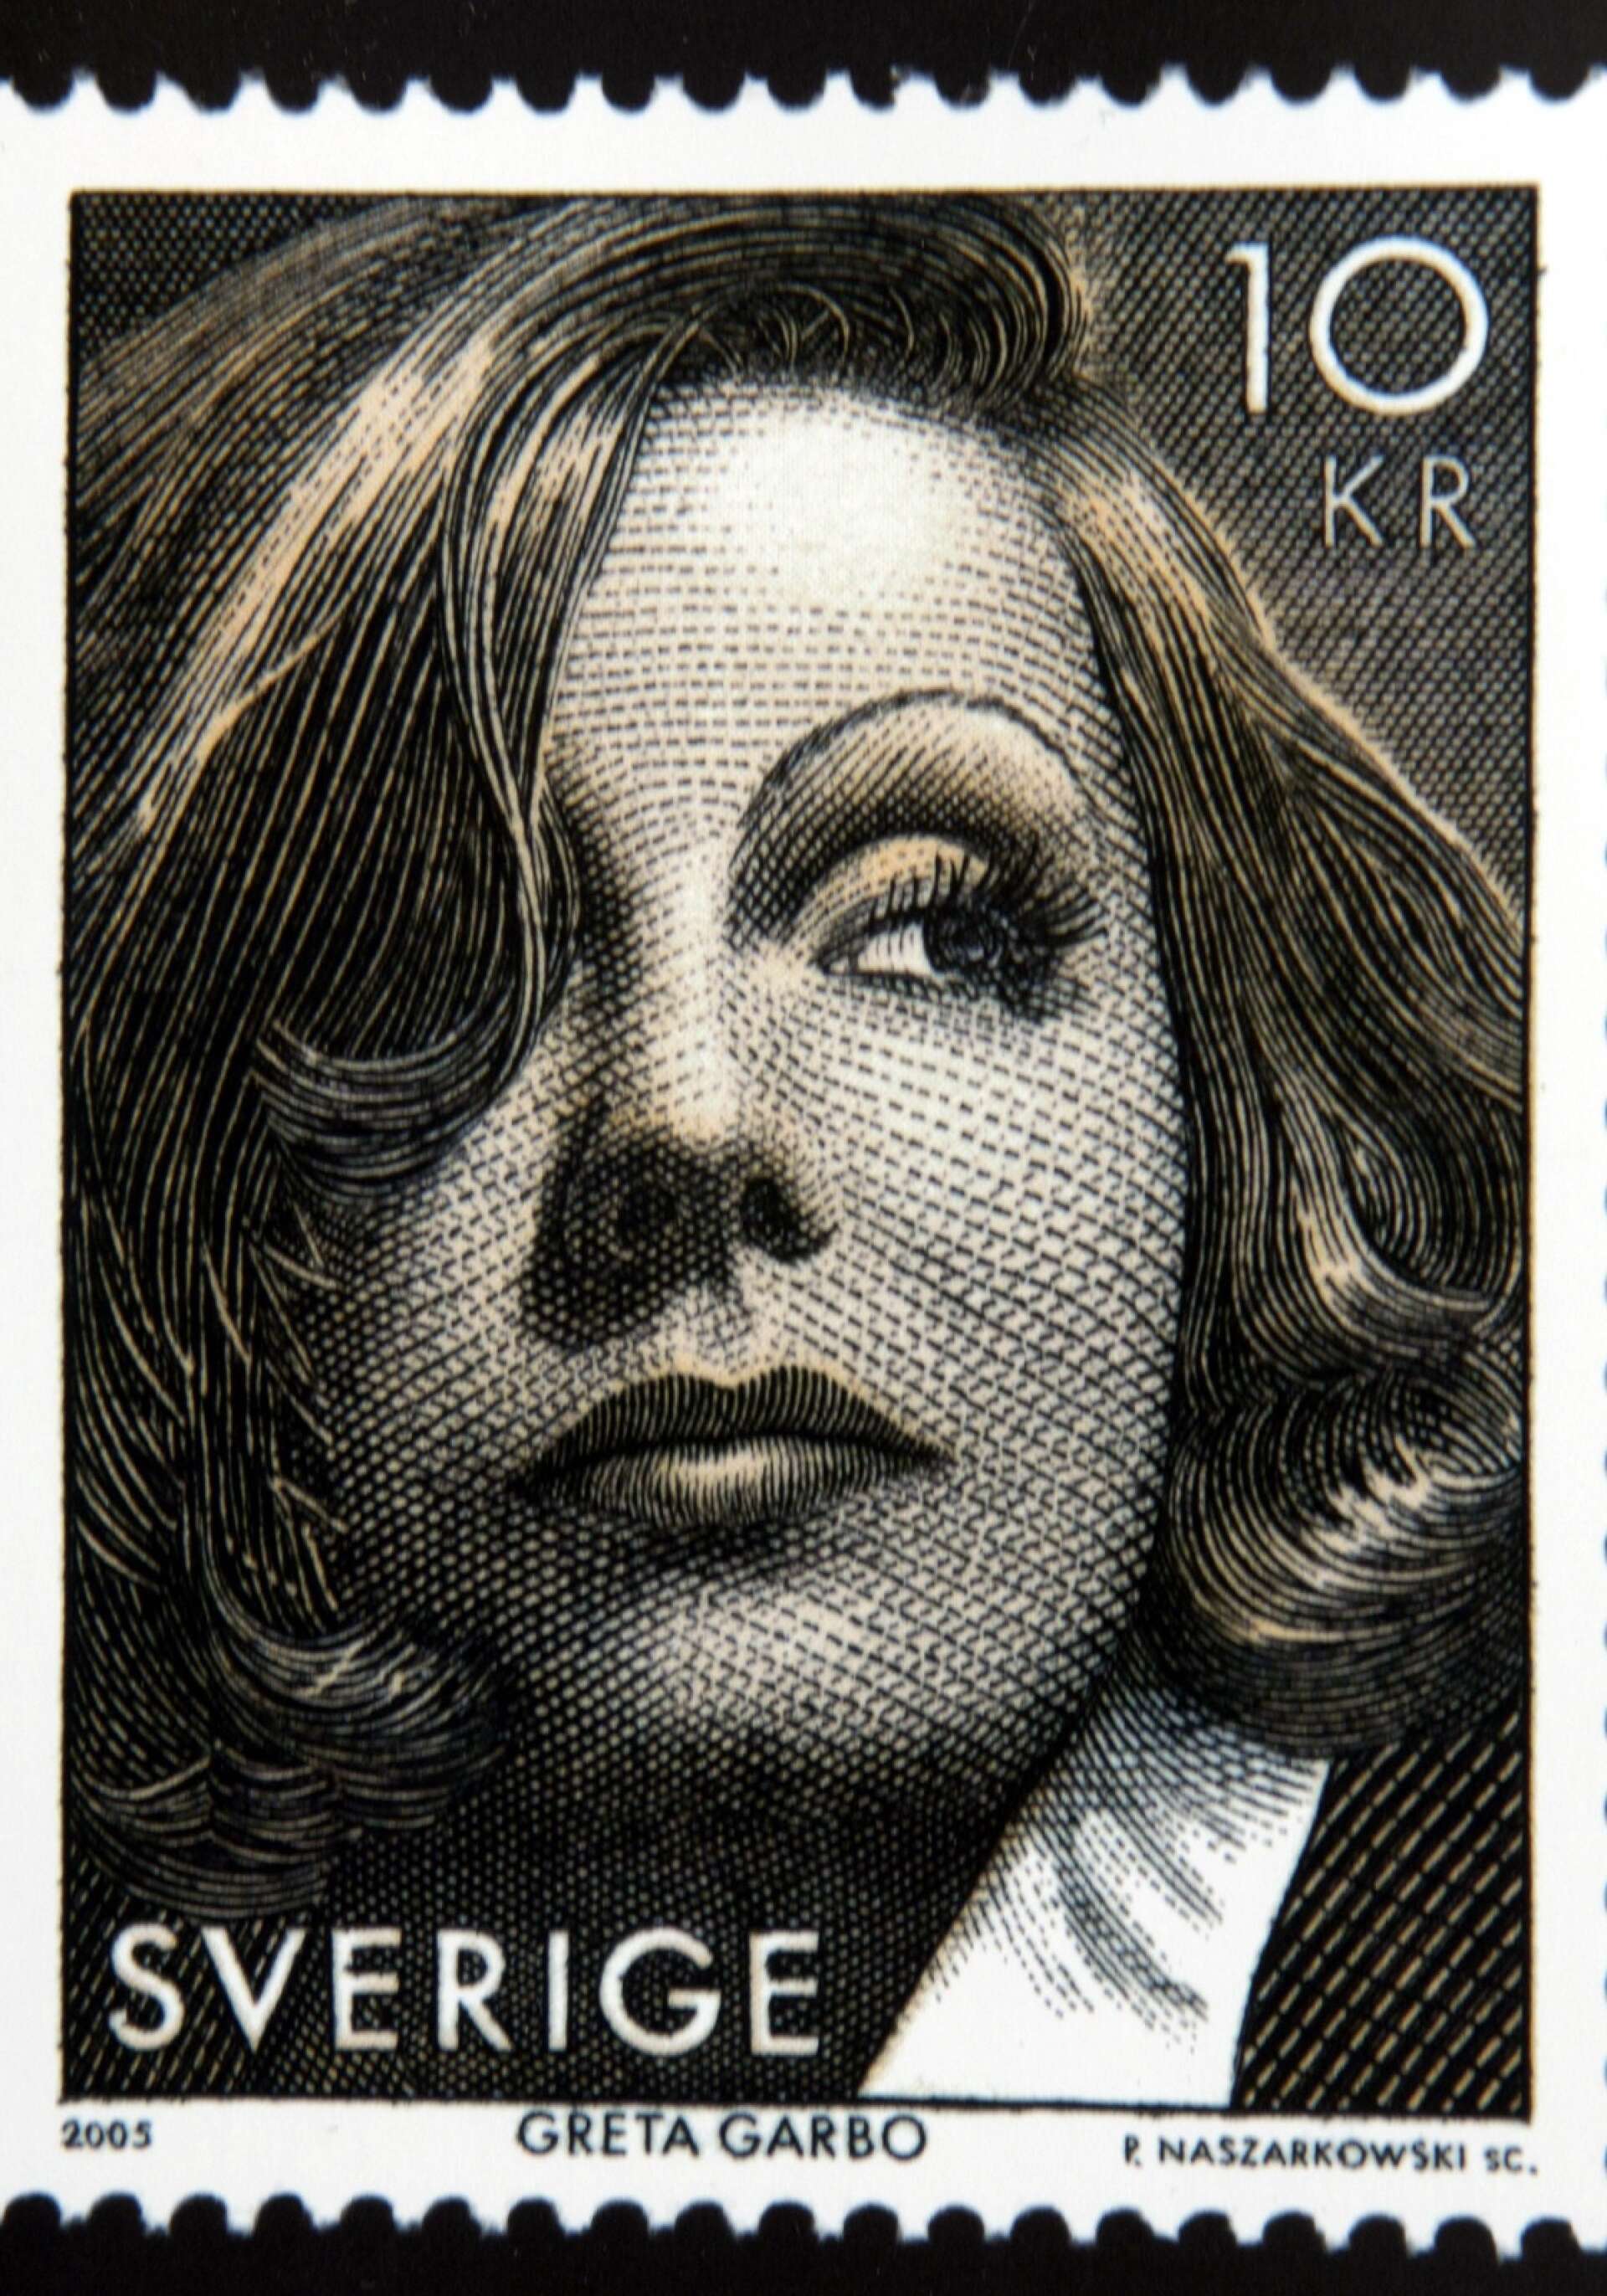 Faksimil av ett frimärke av valören 10 kronor från 2005 med Greta Garbo som motiv som har utsetts till världens vackraste frimärke 2005.